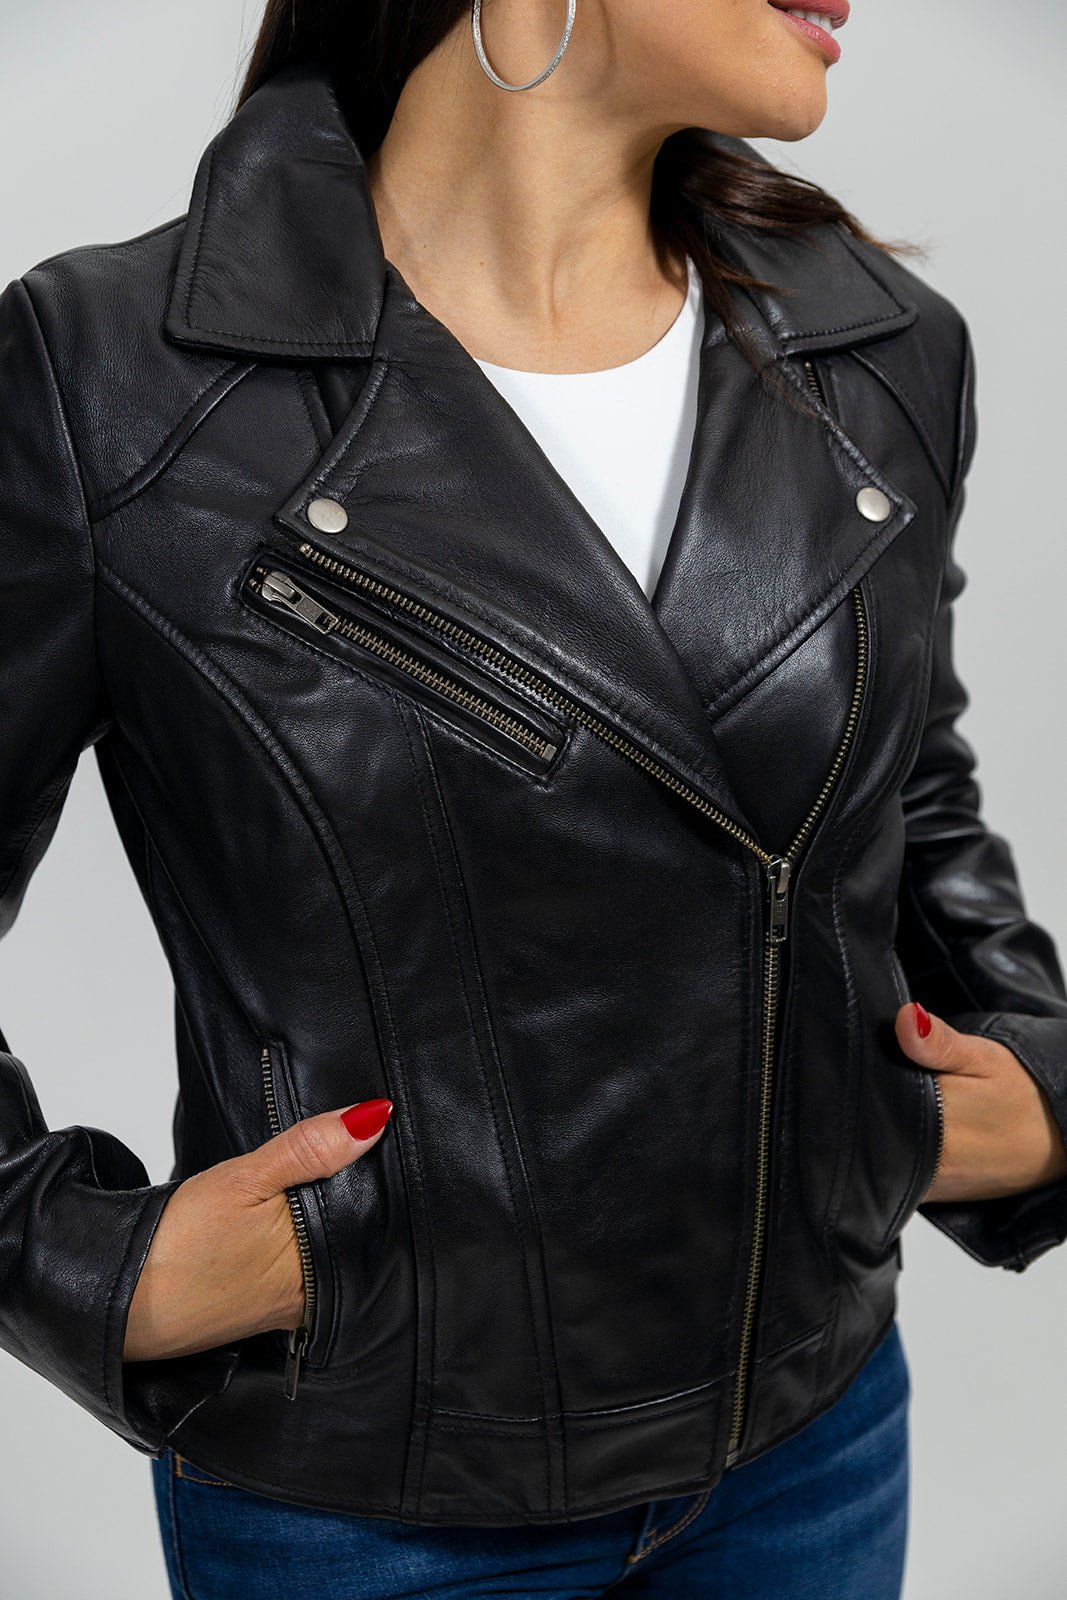 Betsy Womens Fashion Leather Jacket black Women's Leather Jacket Whet Blu NYC   